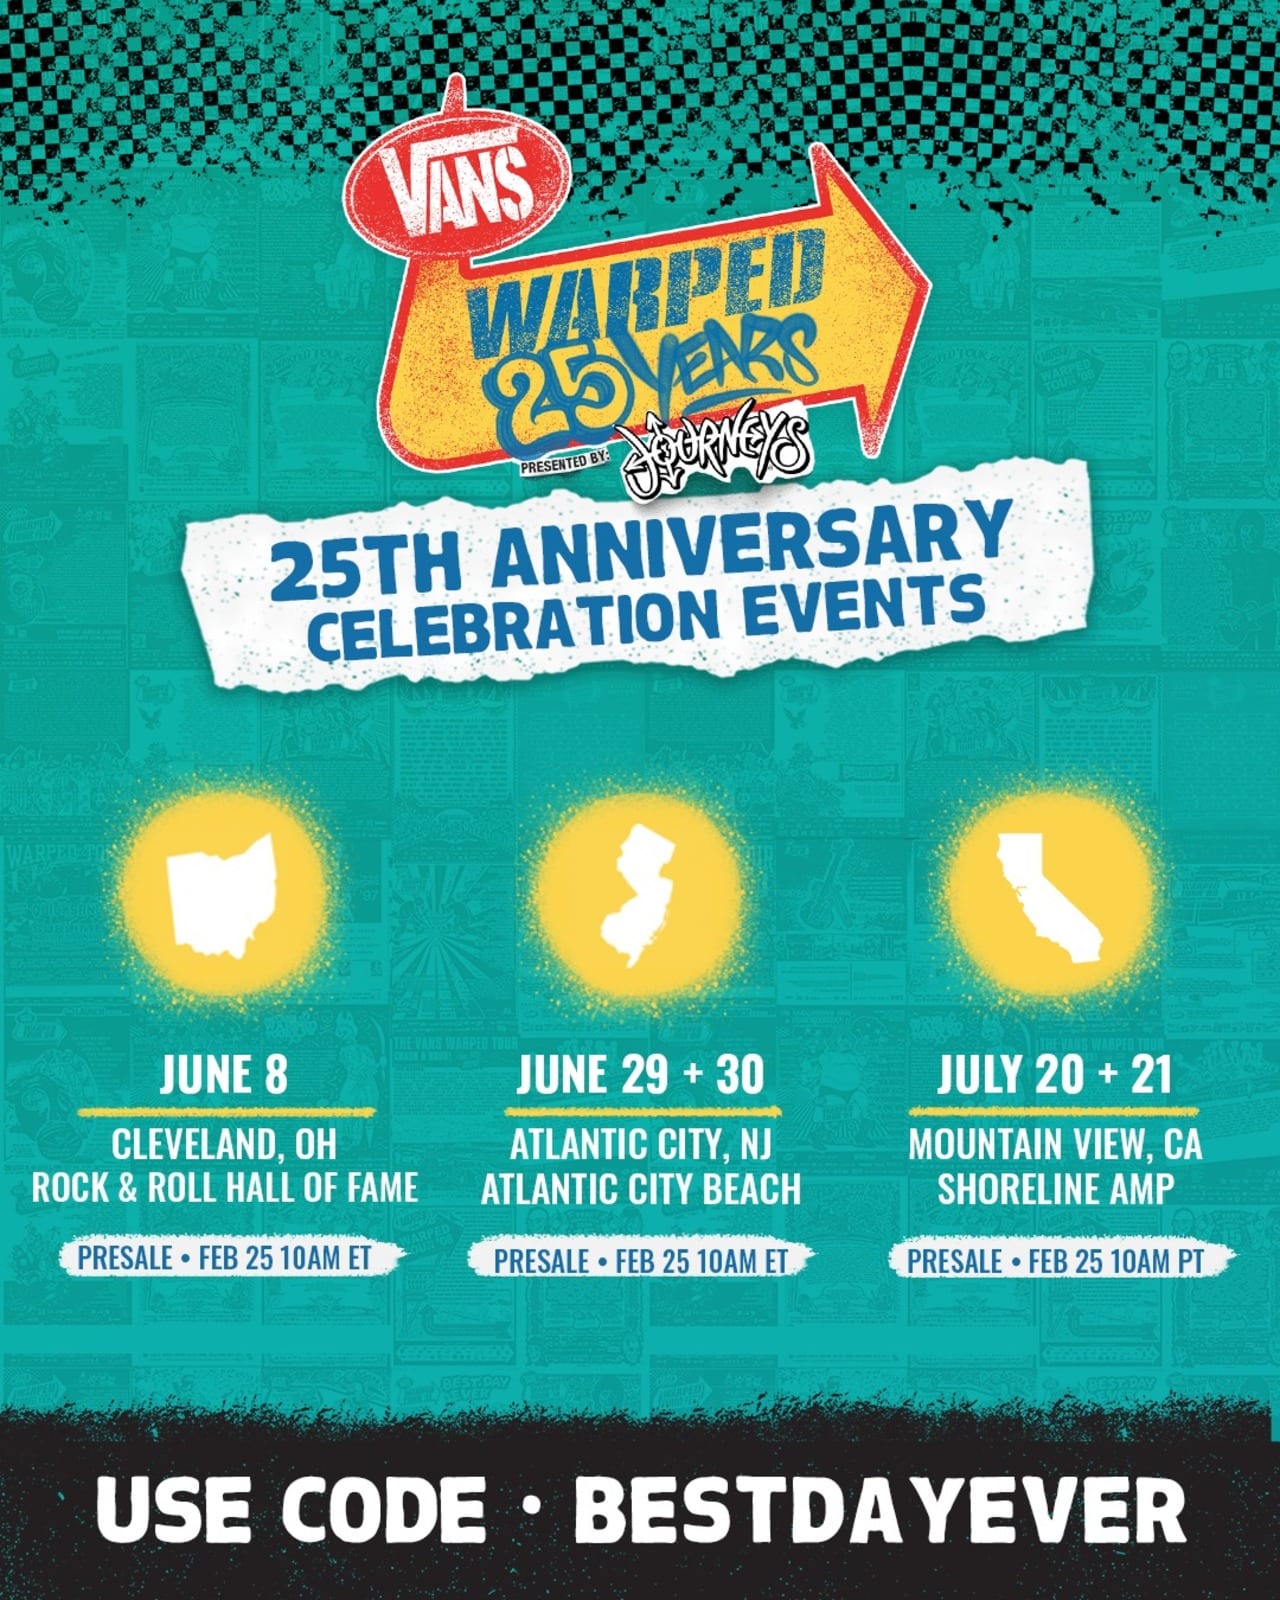 Vans Warped Tour 25 Year Anniversary Celebration Events Juice Magazine